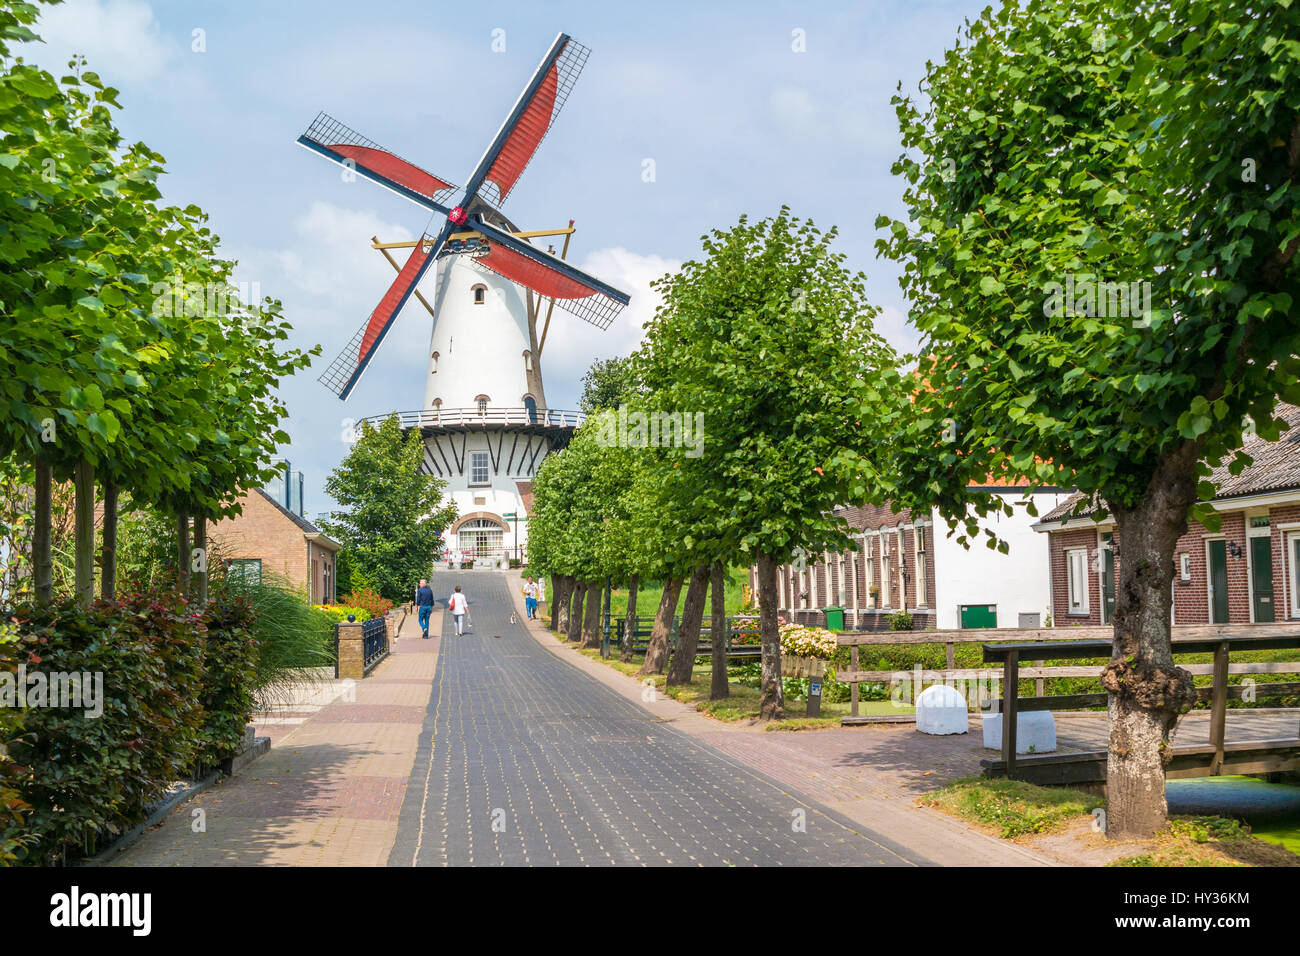 Streetscene con mulino a vento tradizionale nella città di Willemstad, Brabante Settentrionale, Paesi Bassi Foto Stock